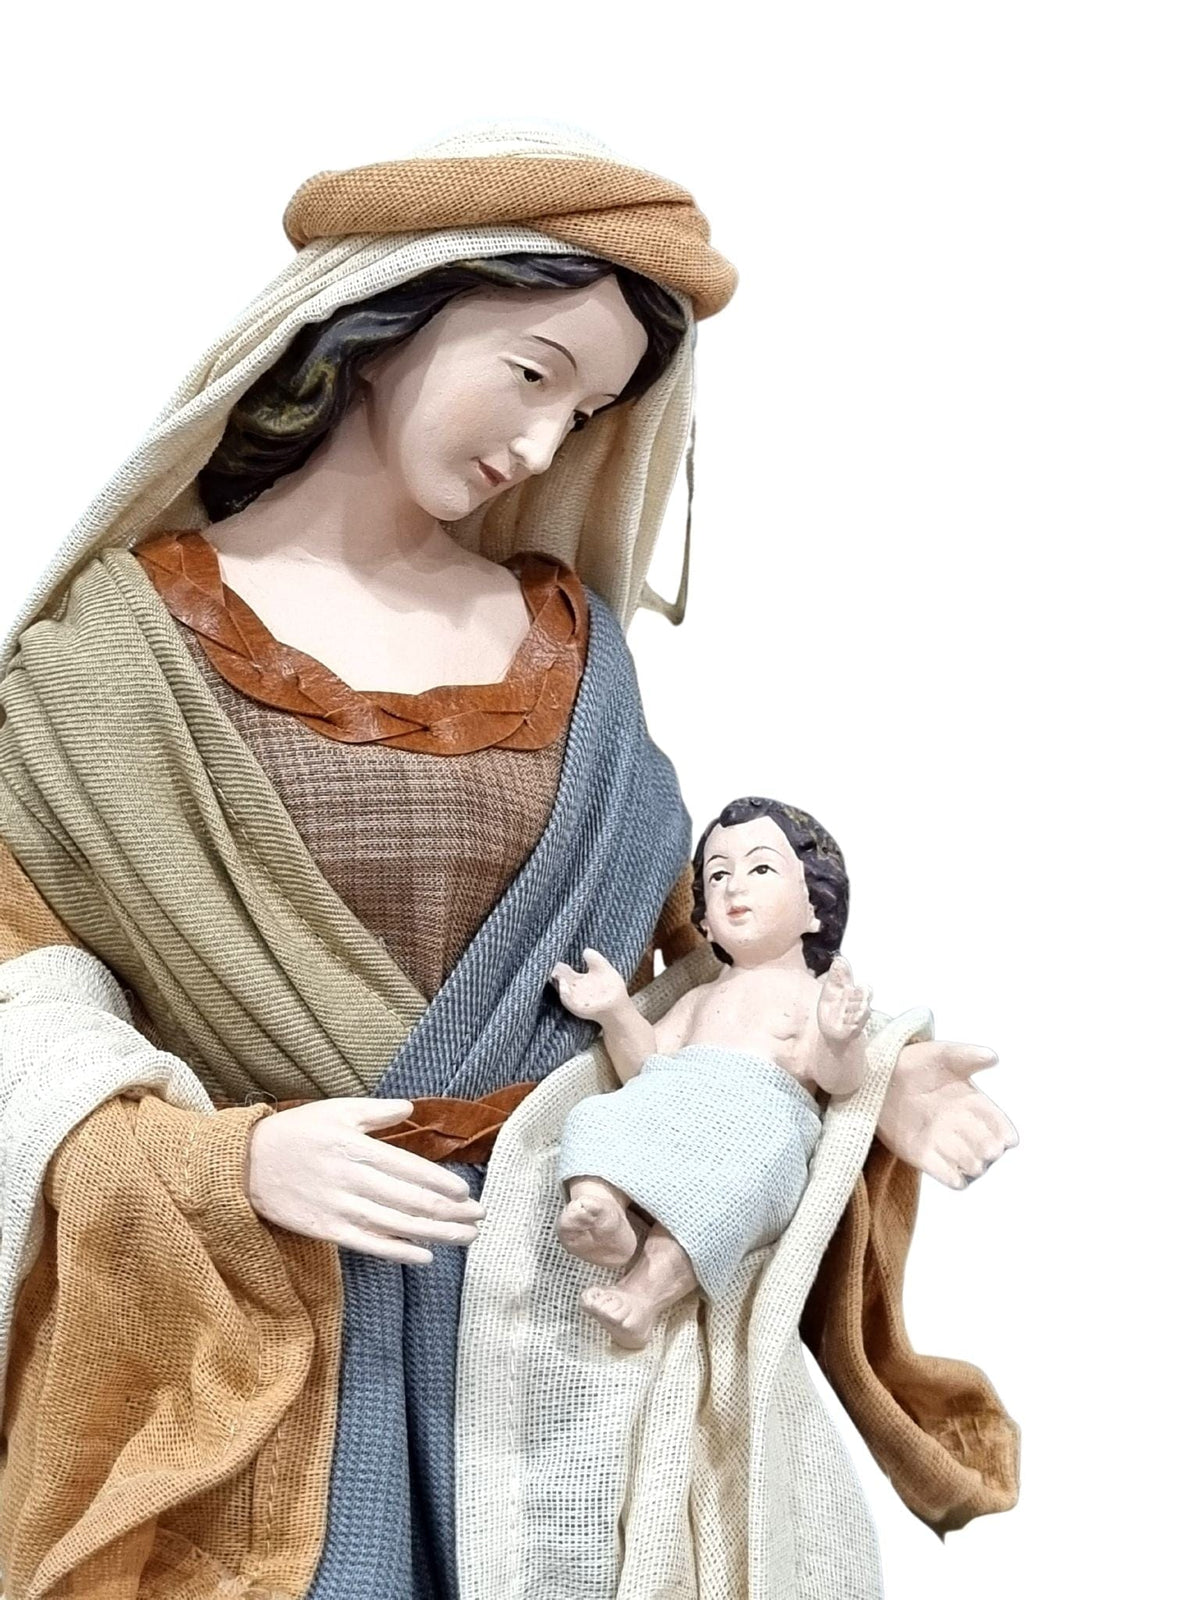 Sagrada Família Cinza com Nude Estilo Napolitano 48 cm